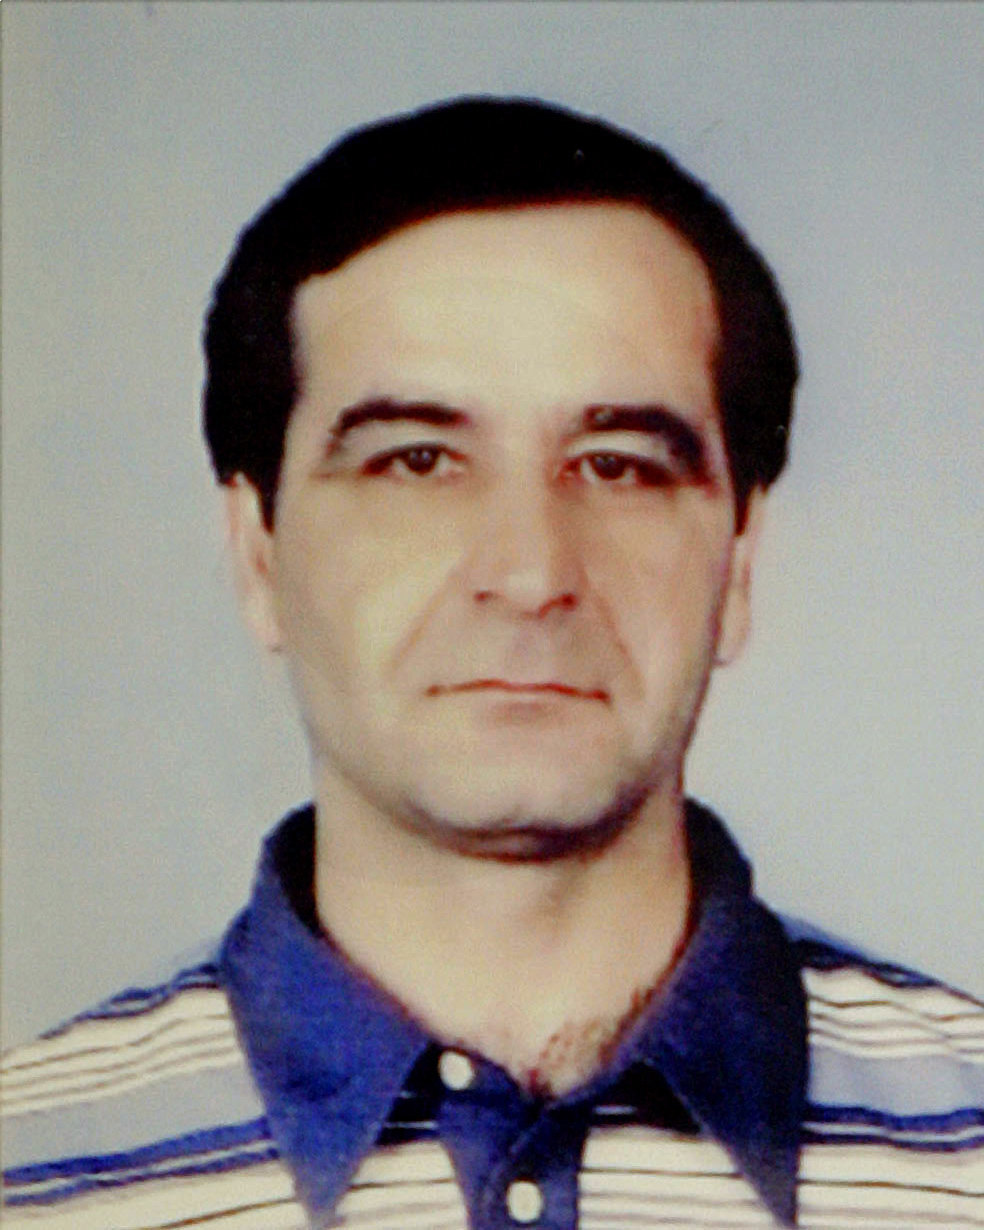 Mehmet Kubasik